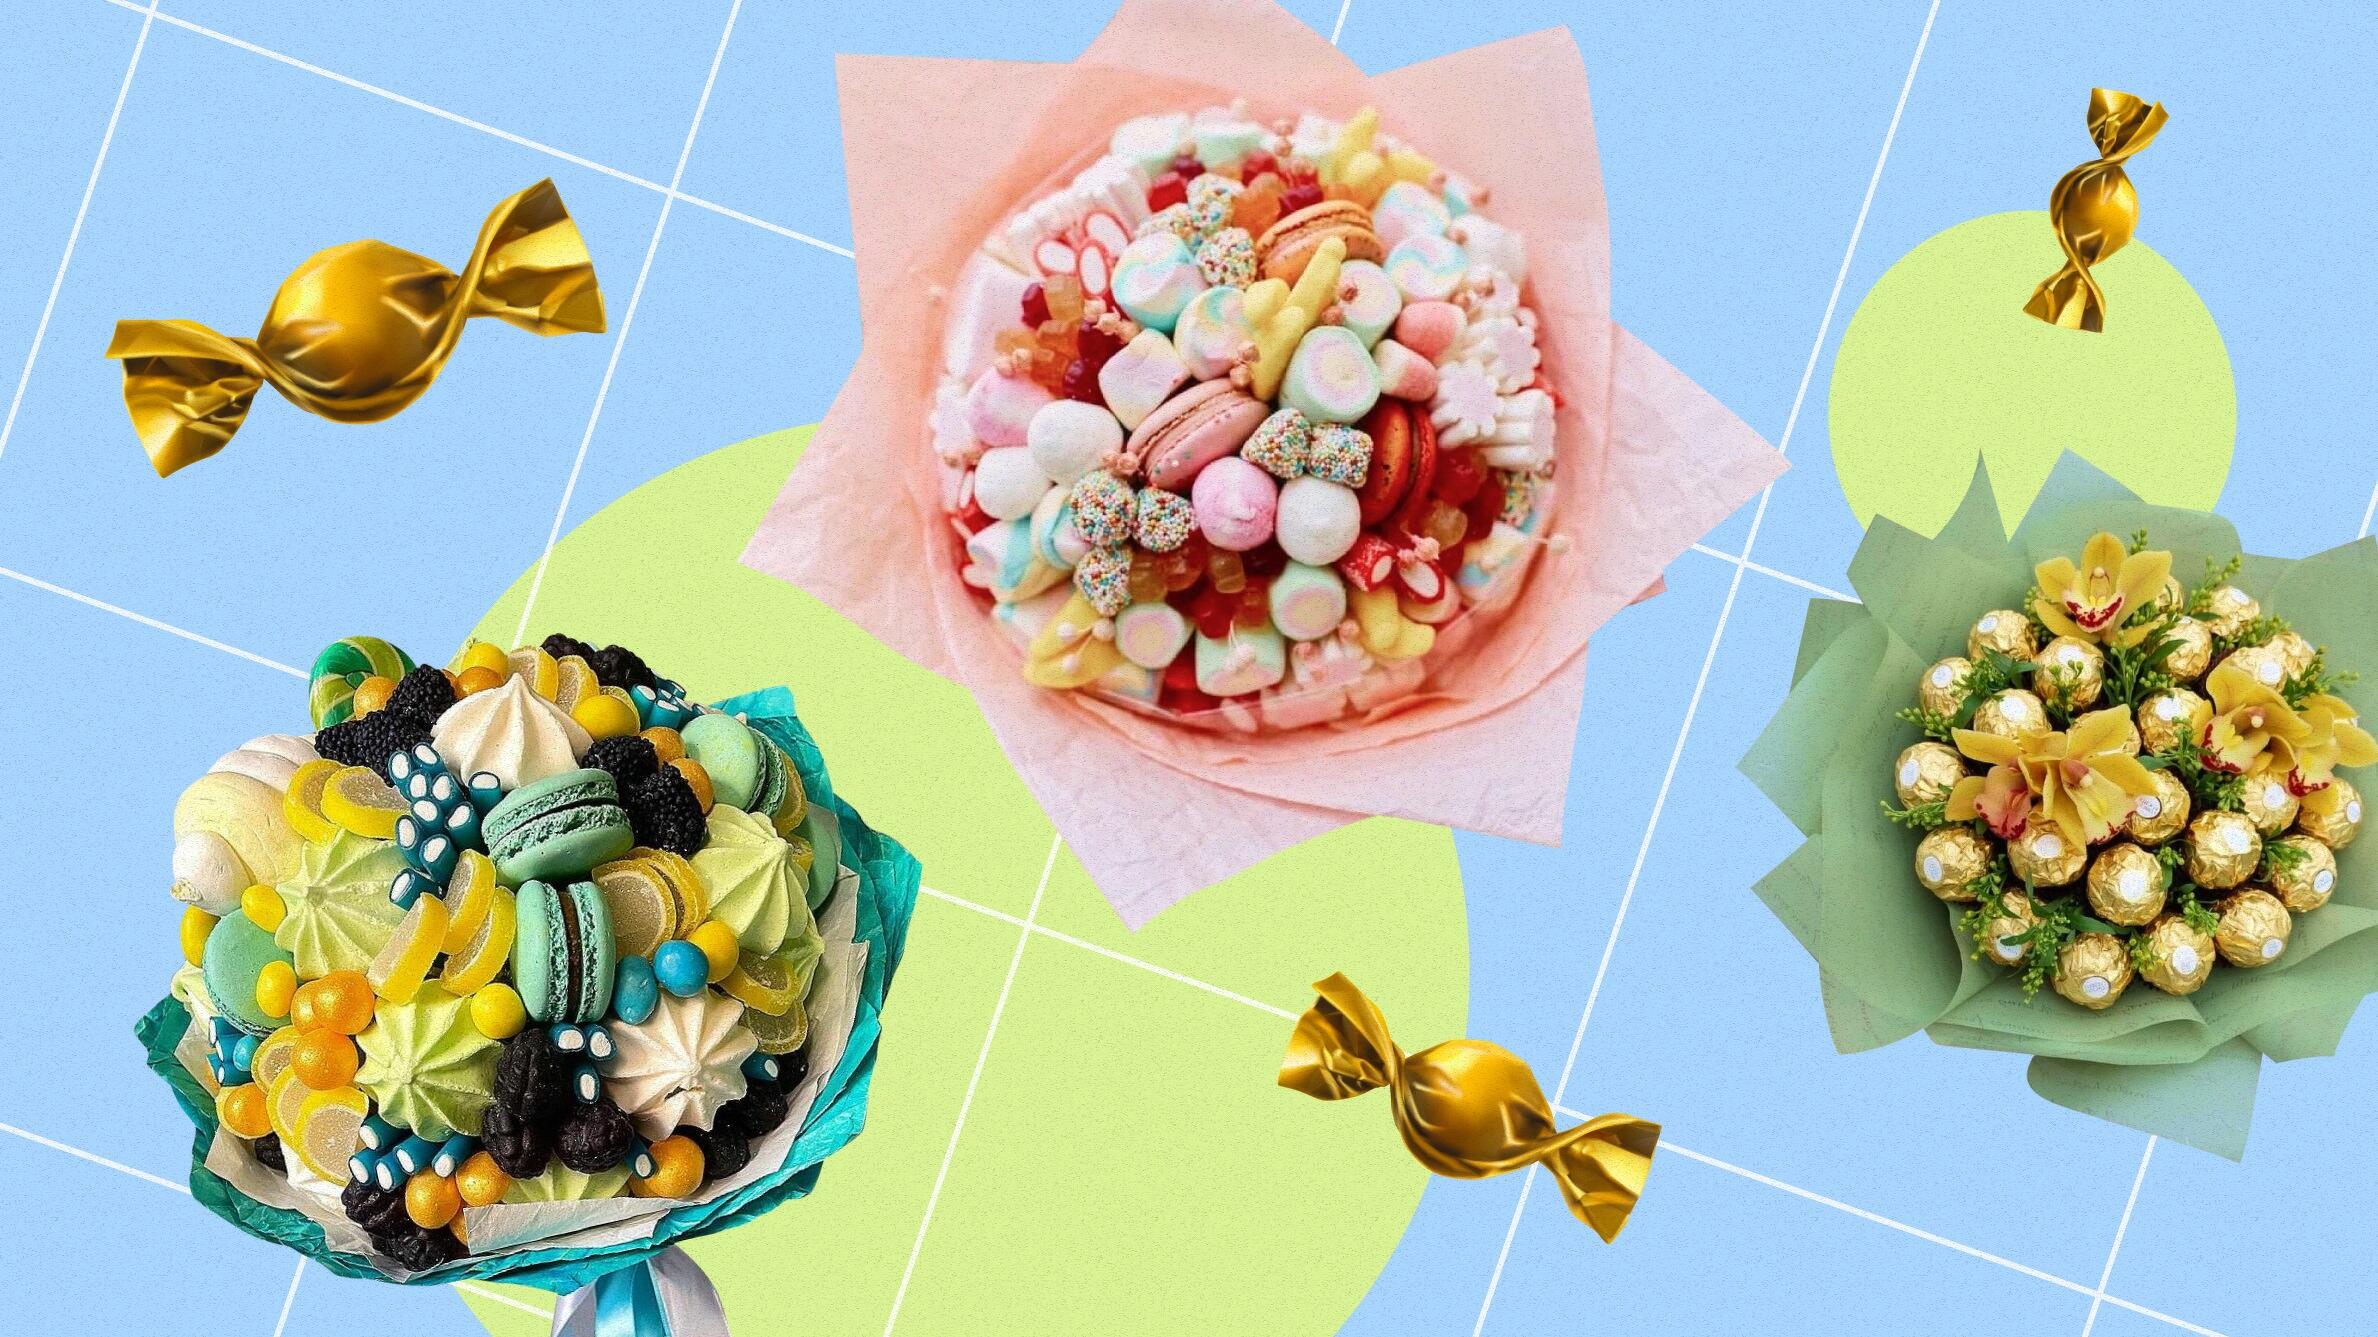 Поделки из конфет и фантиков — самые простые и интересные поделки для начинающих